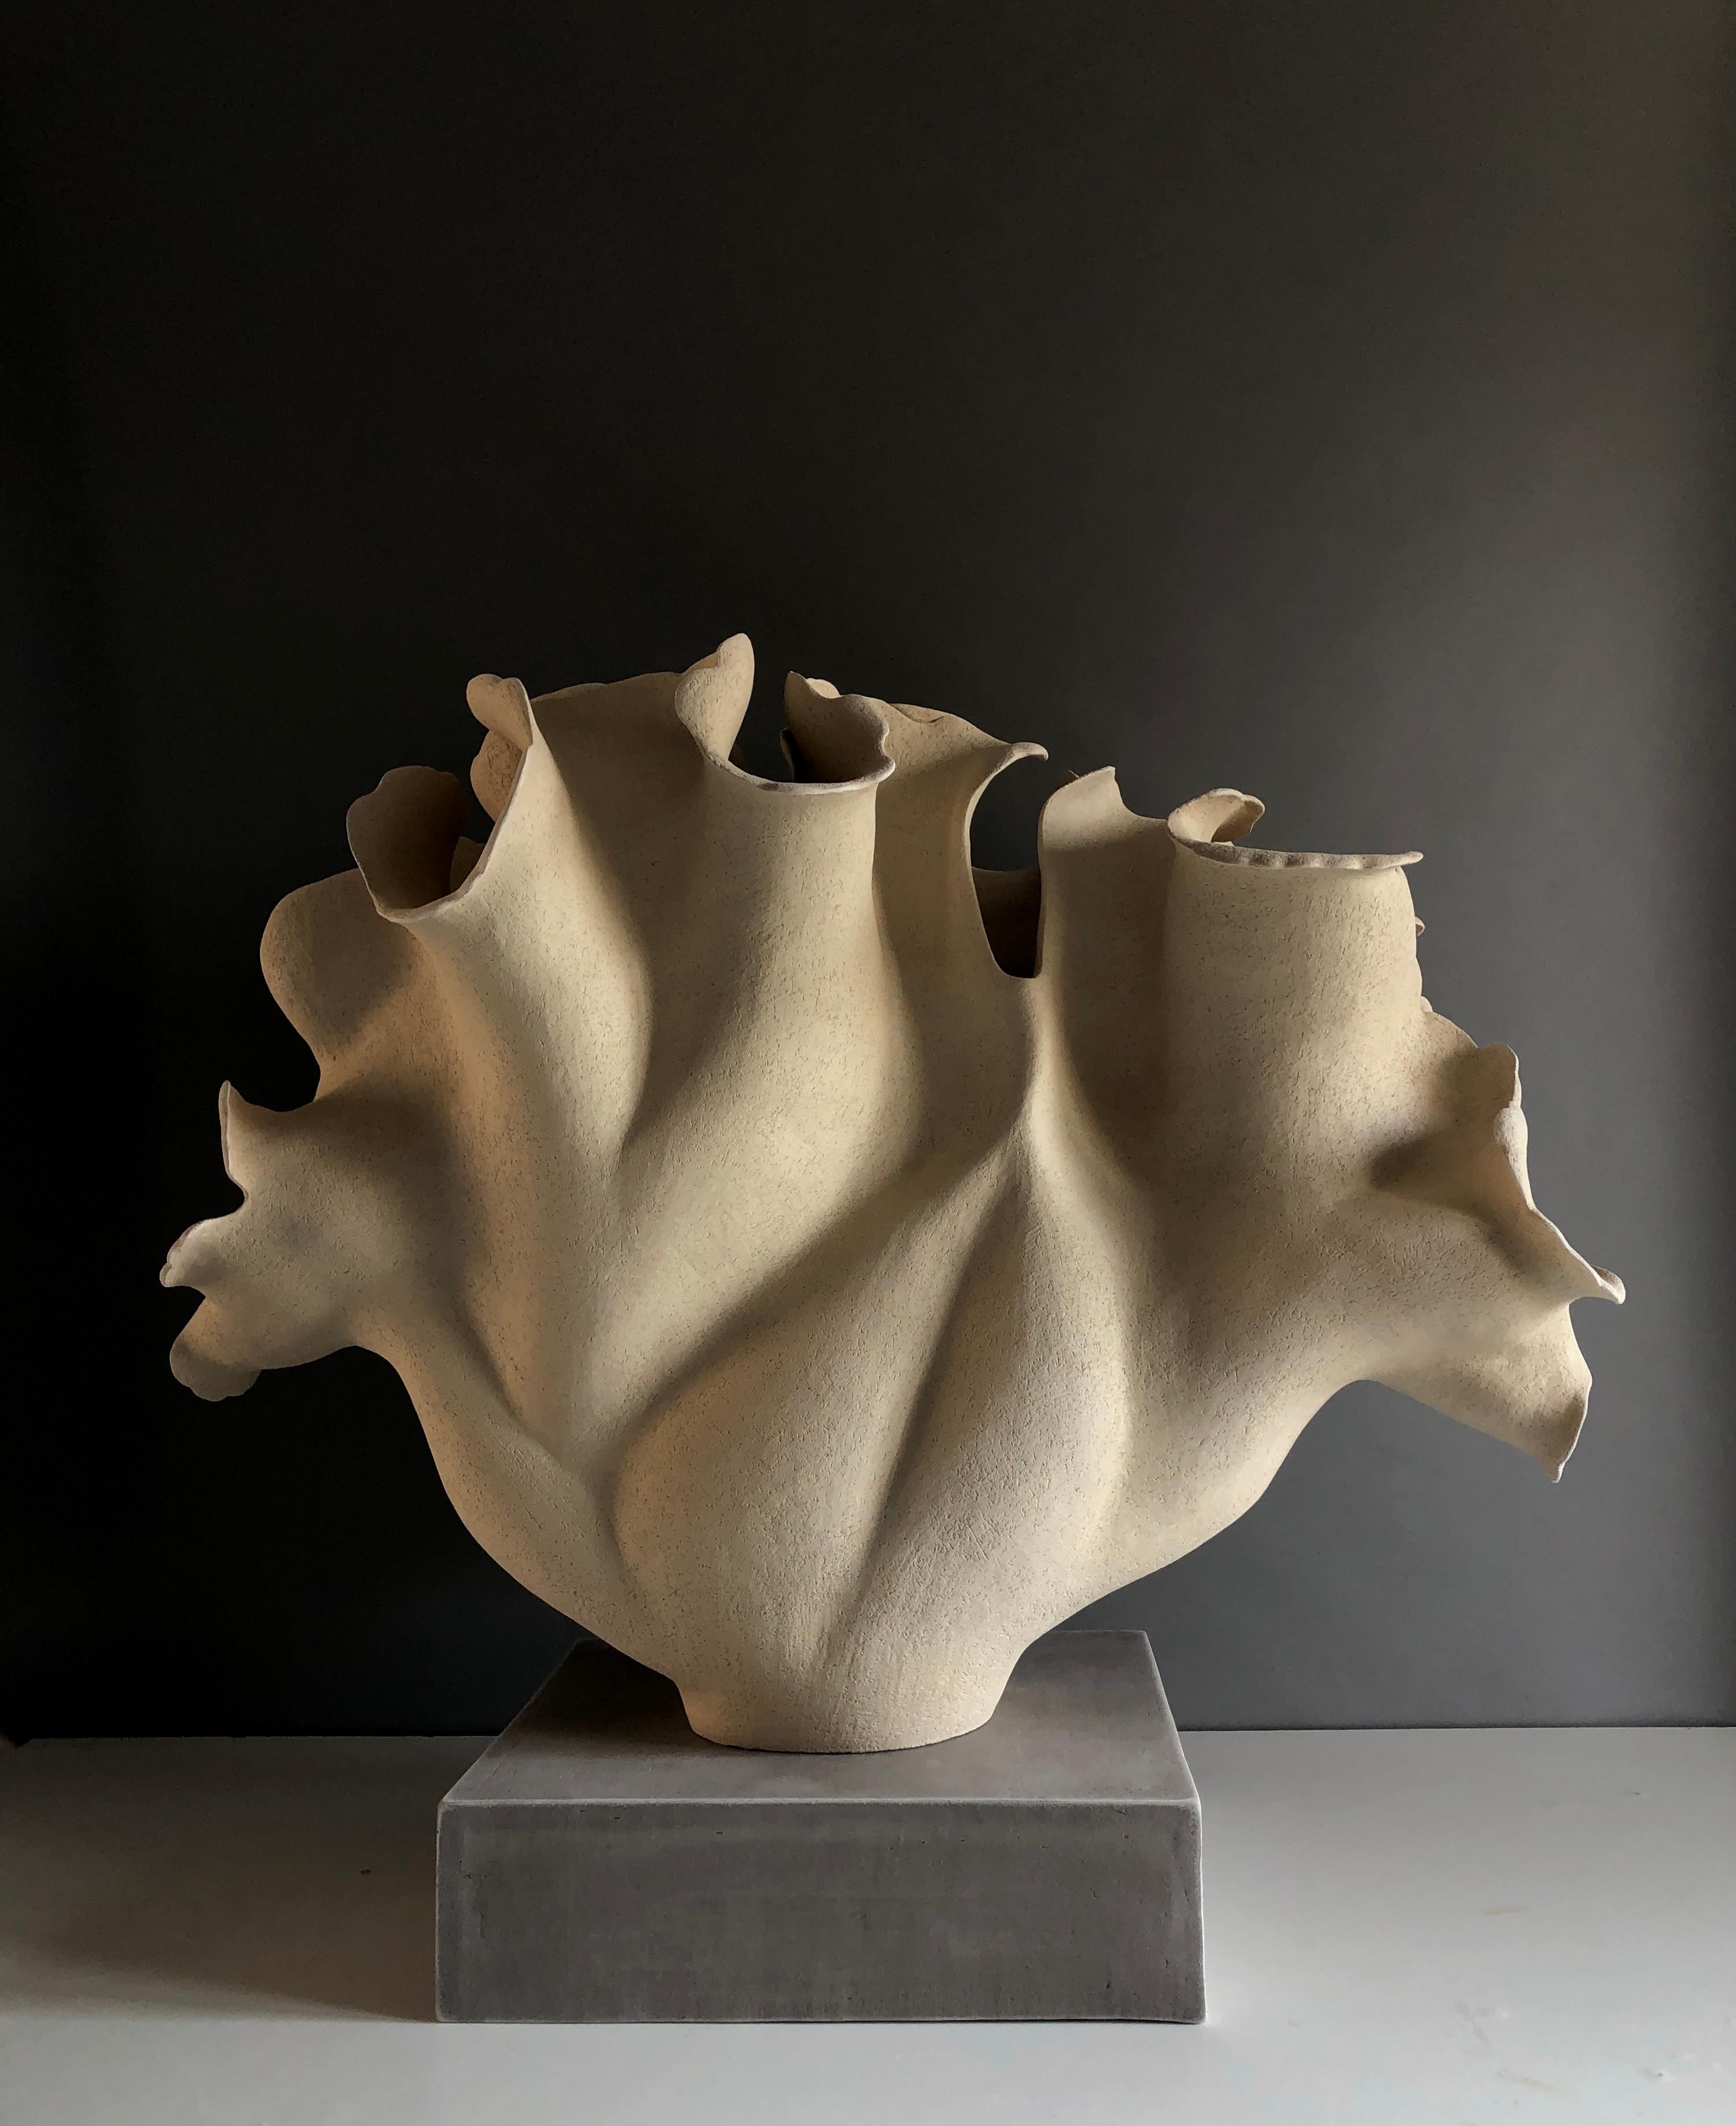 Inspirée d'une forme botanique en forme de feuille, cette sculpture est réalisée à la main dans un grès de couleur sable avec une surface sculptée légèrement rugueuse. Il repose sur un socle rectangulaire en céramique, en grès gris de texture